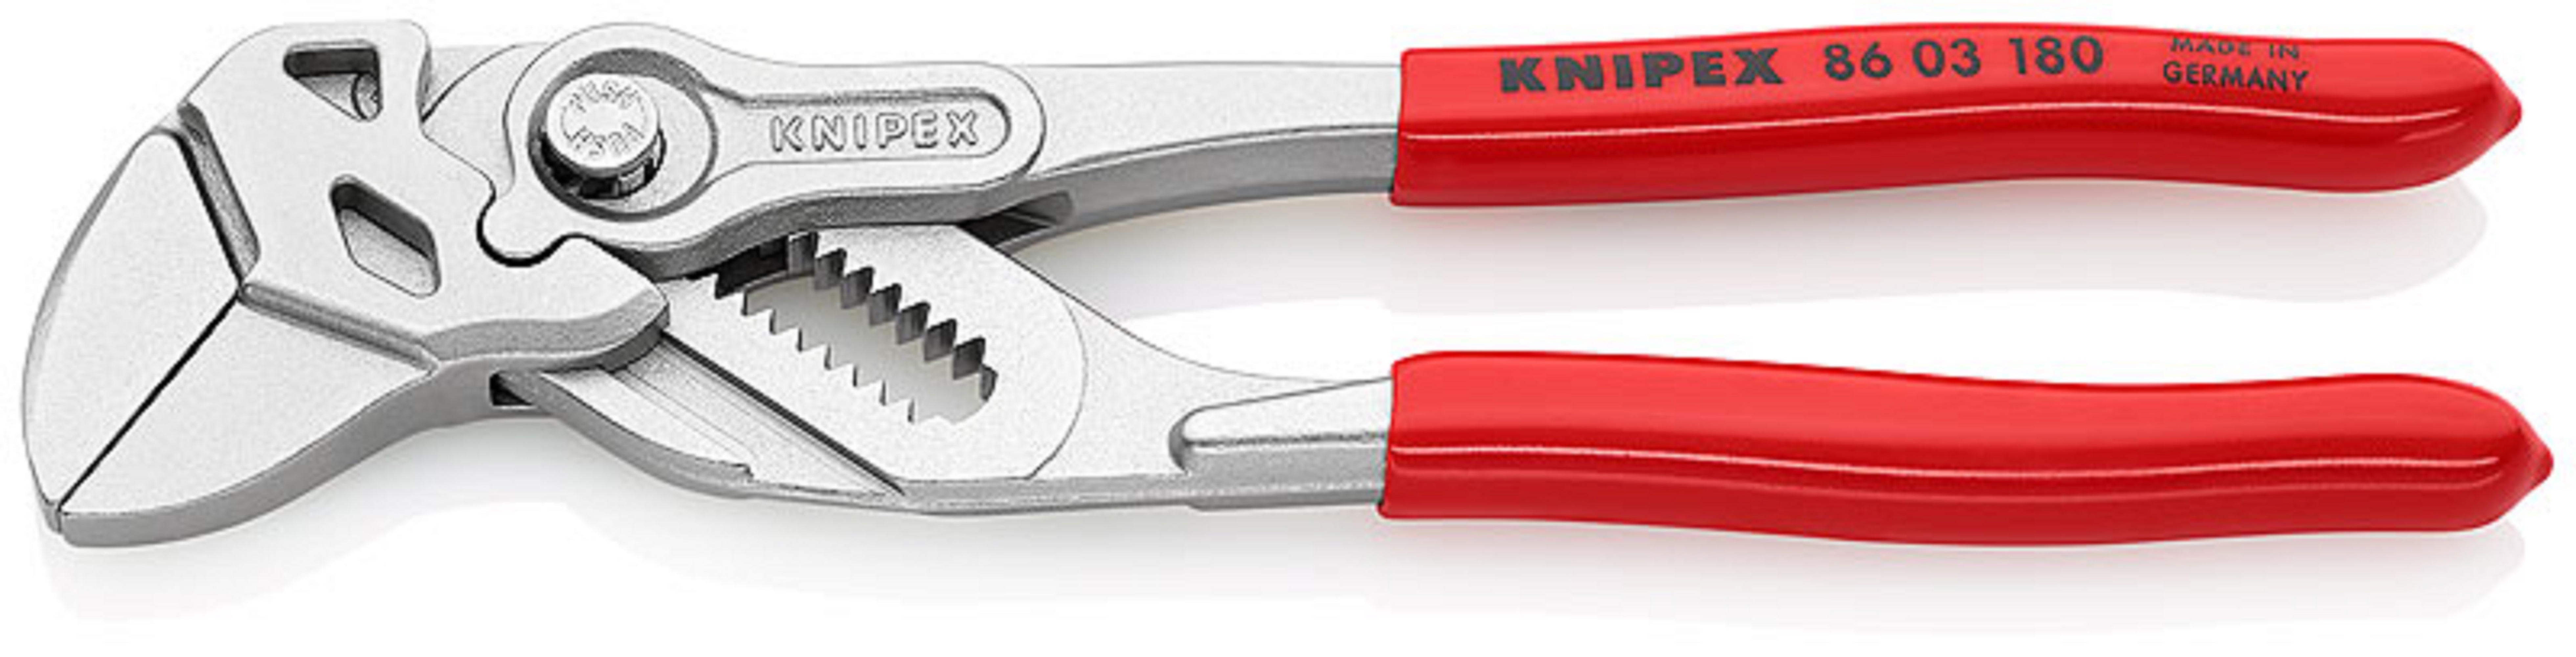 Knipex sleuteltang drukknop 35mm 1 3/8 180mm 8603180